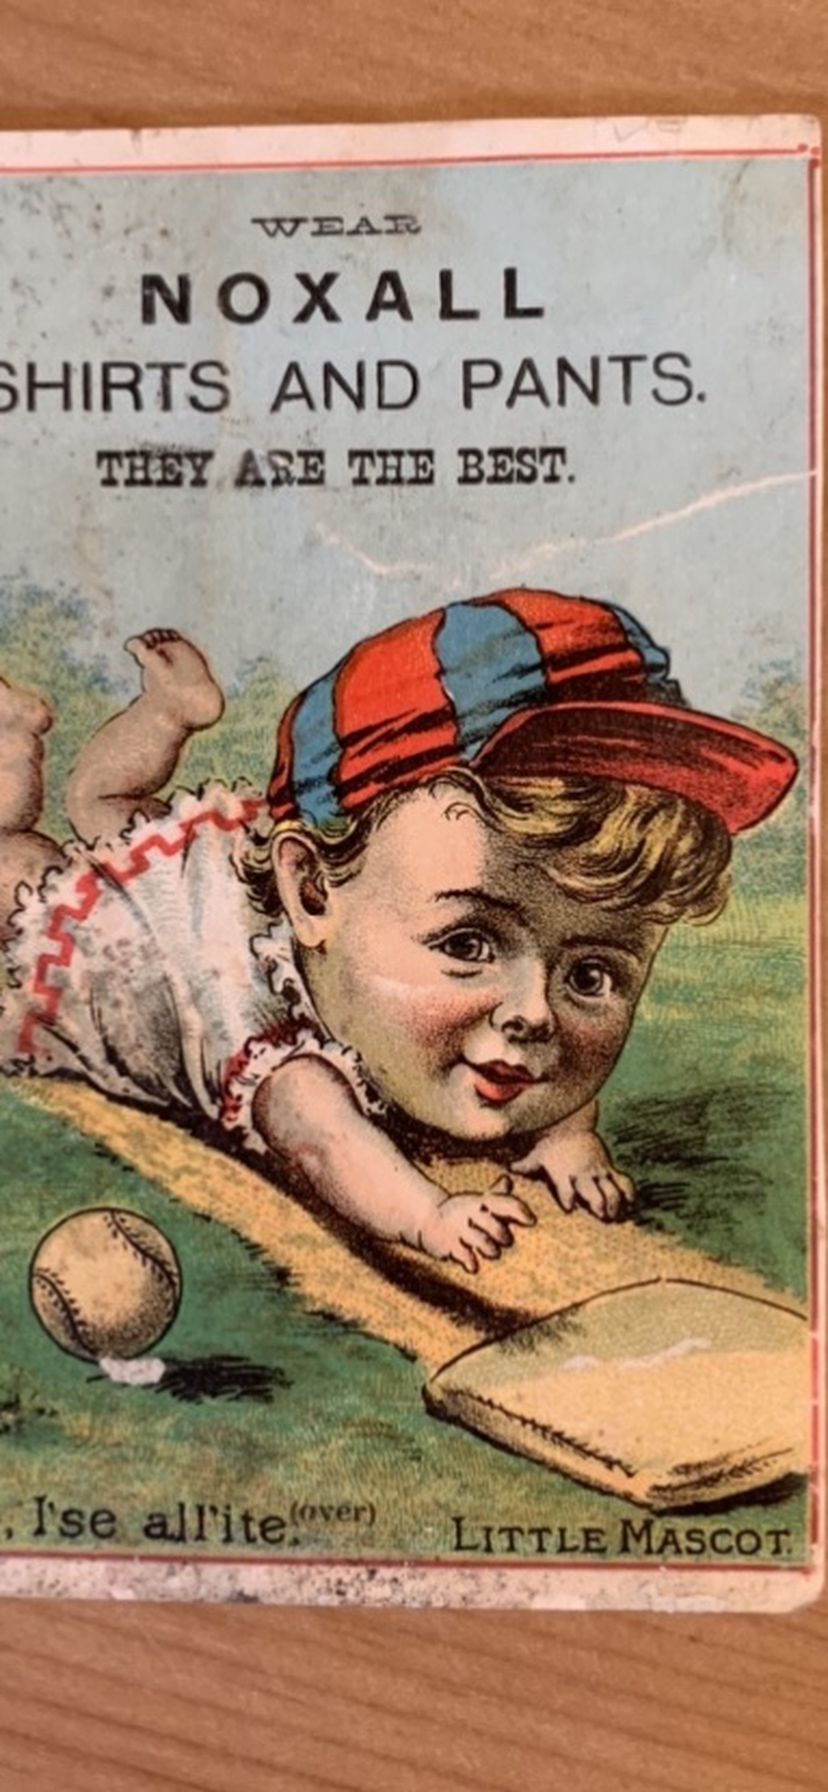 NOXALL SHIRTS PANTS BASEBALL QUINCY IL.1880’S TRADE CARD Baseball advertising trade card